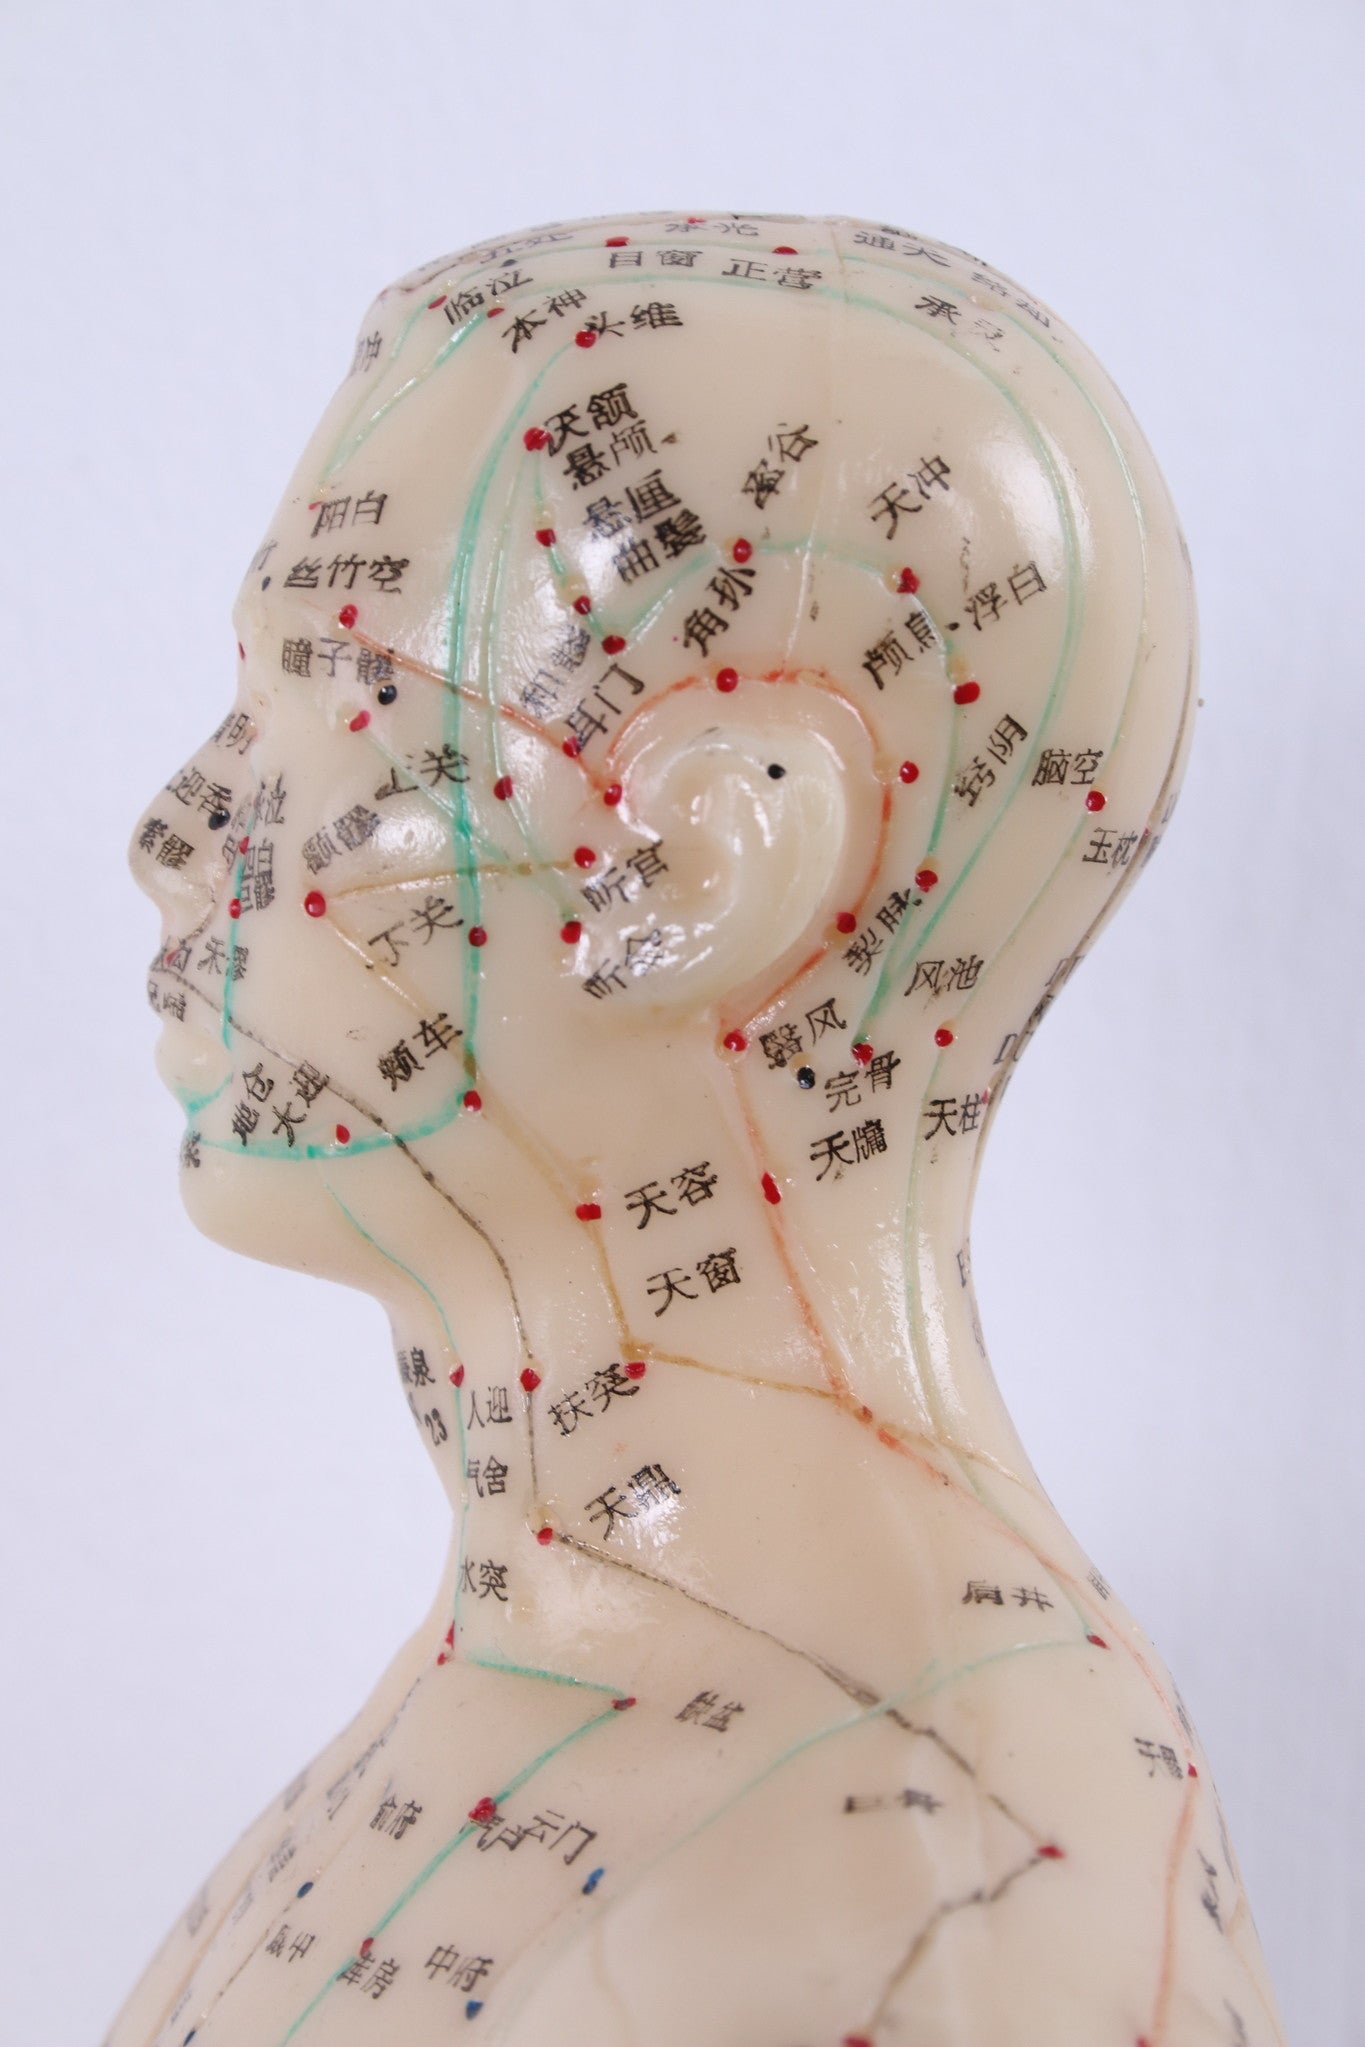 Chinese Acupuncture Pop zacht rubber Man detail gezicht zijkant